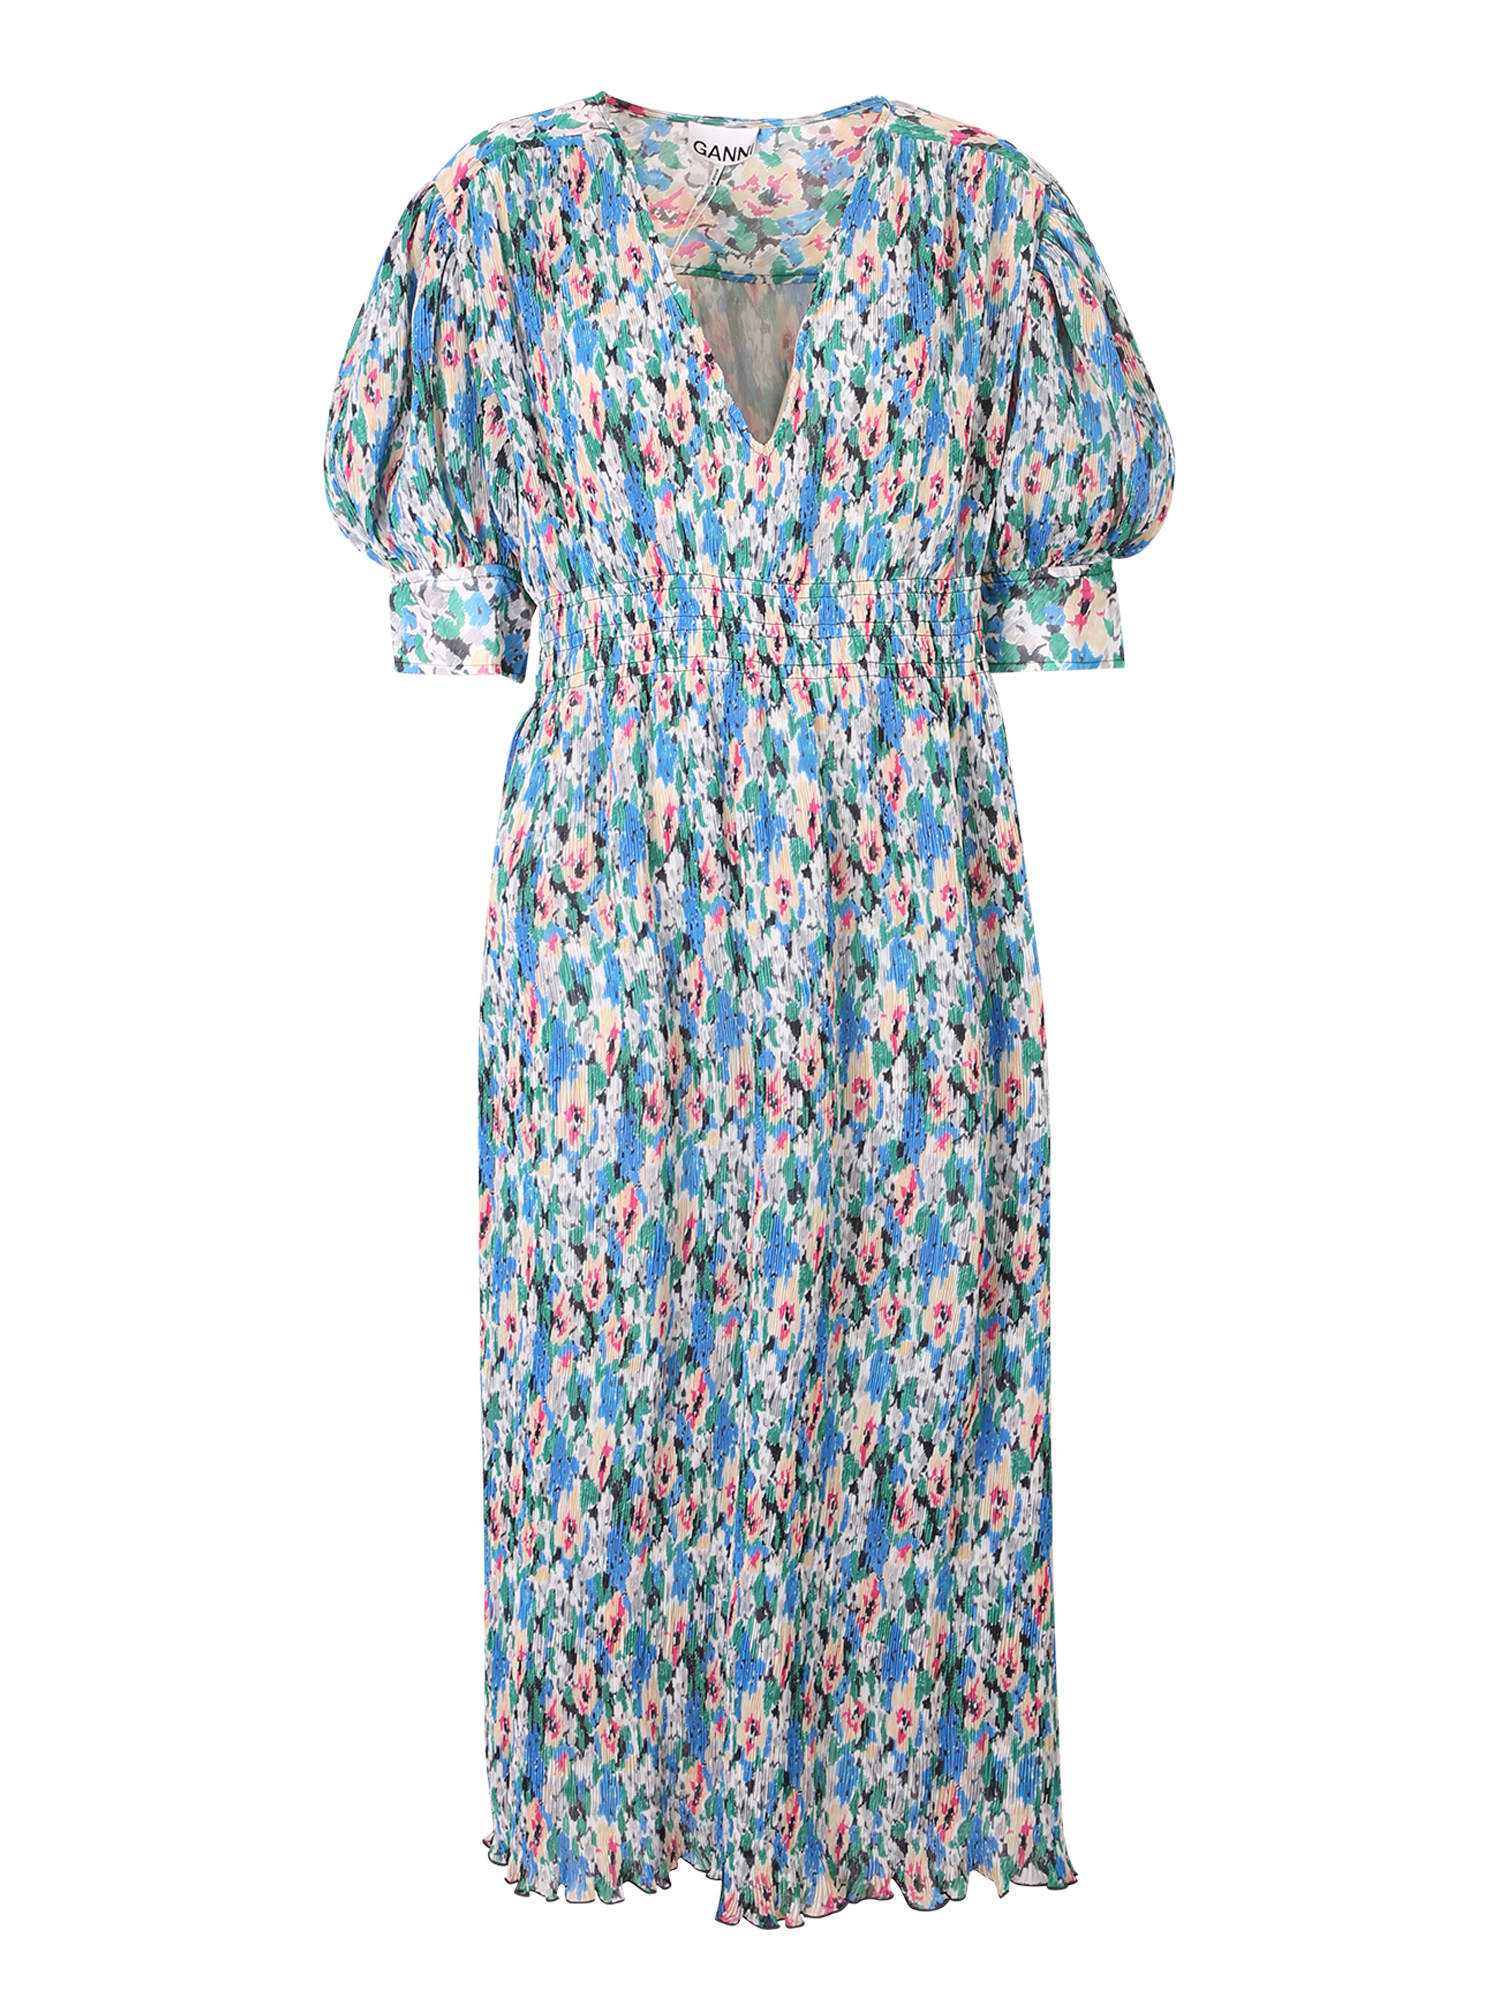 Ganni Floral Print Midi Dress